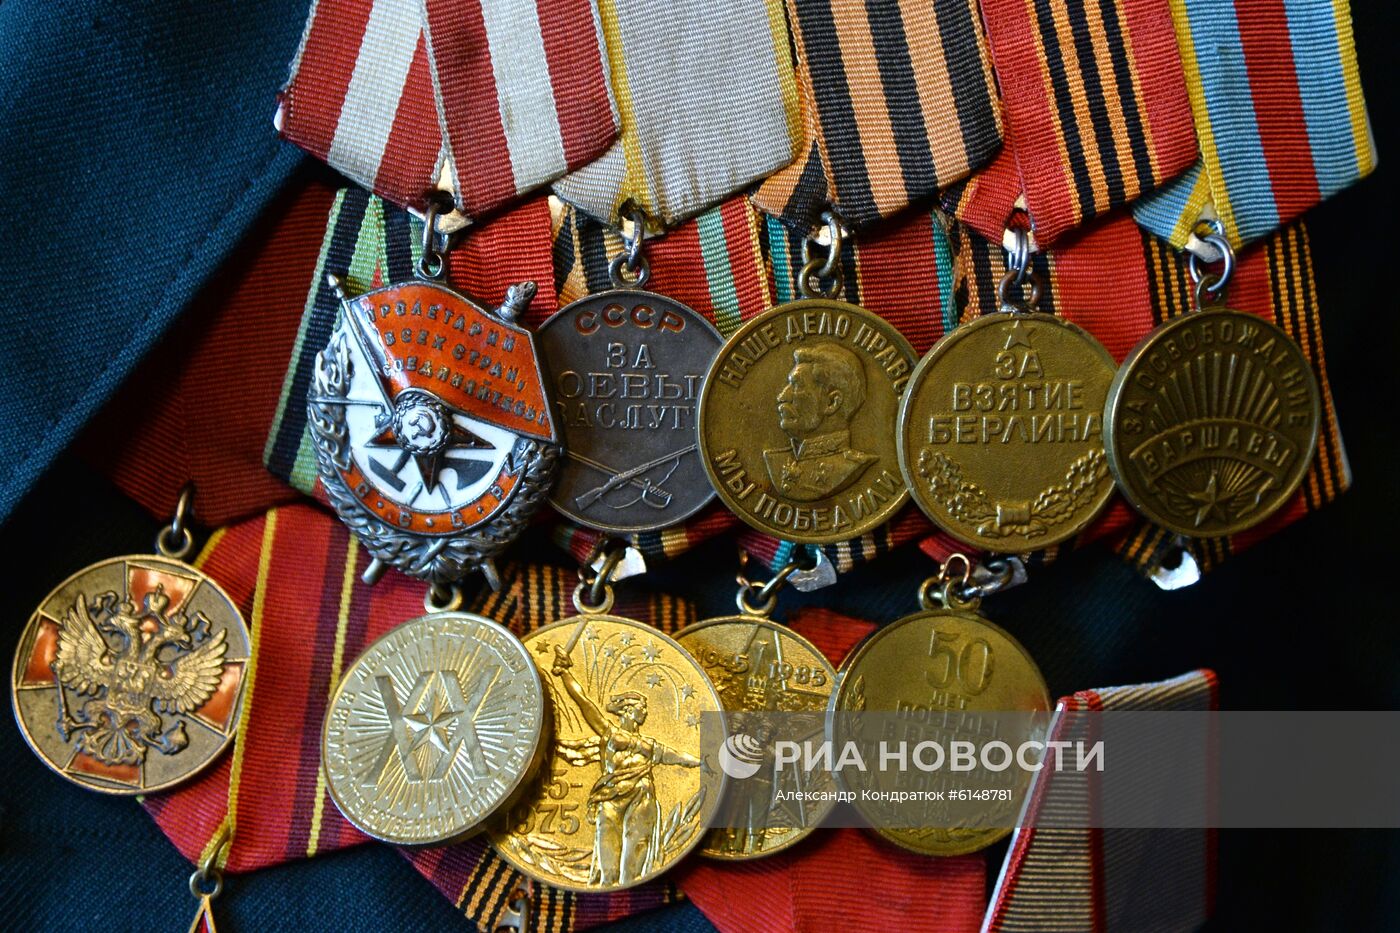 Ветеран Великой Отечественной войны Н. П. Калашников